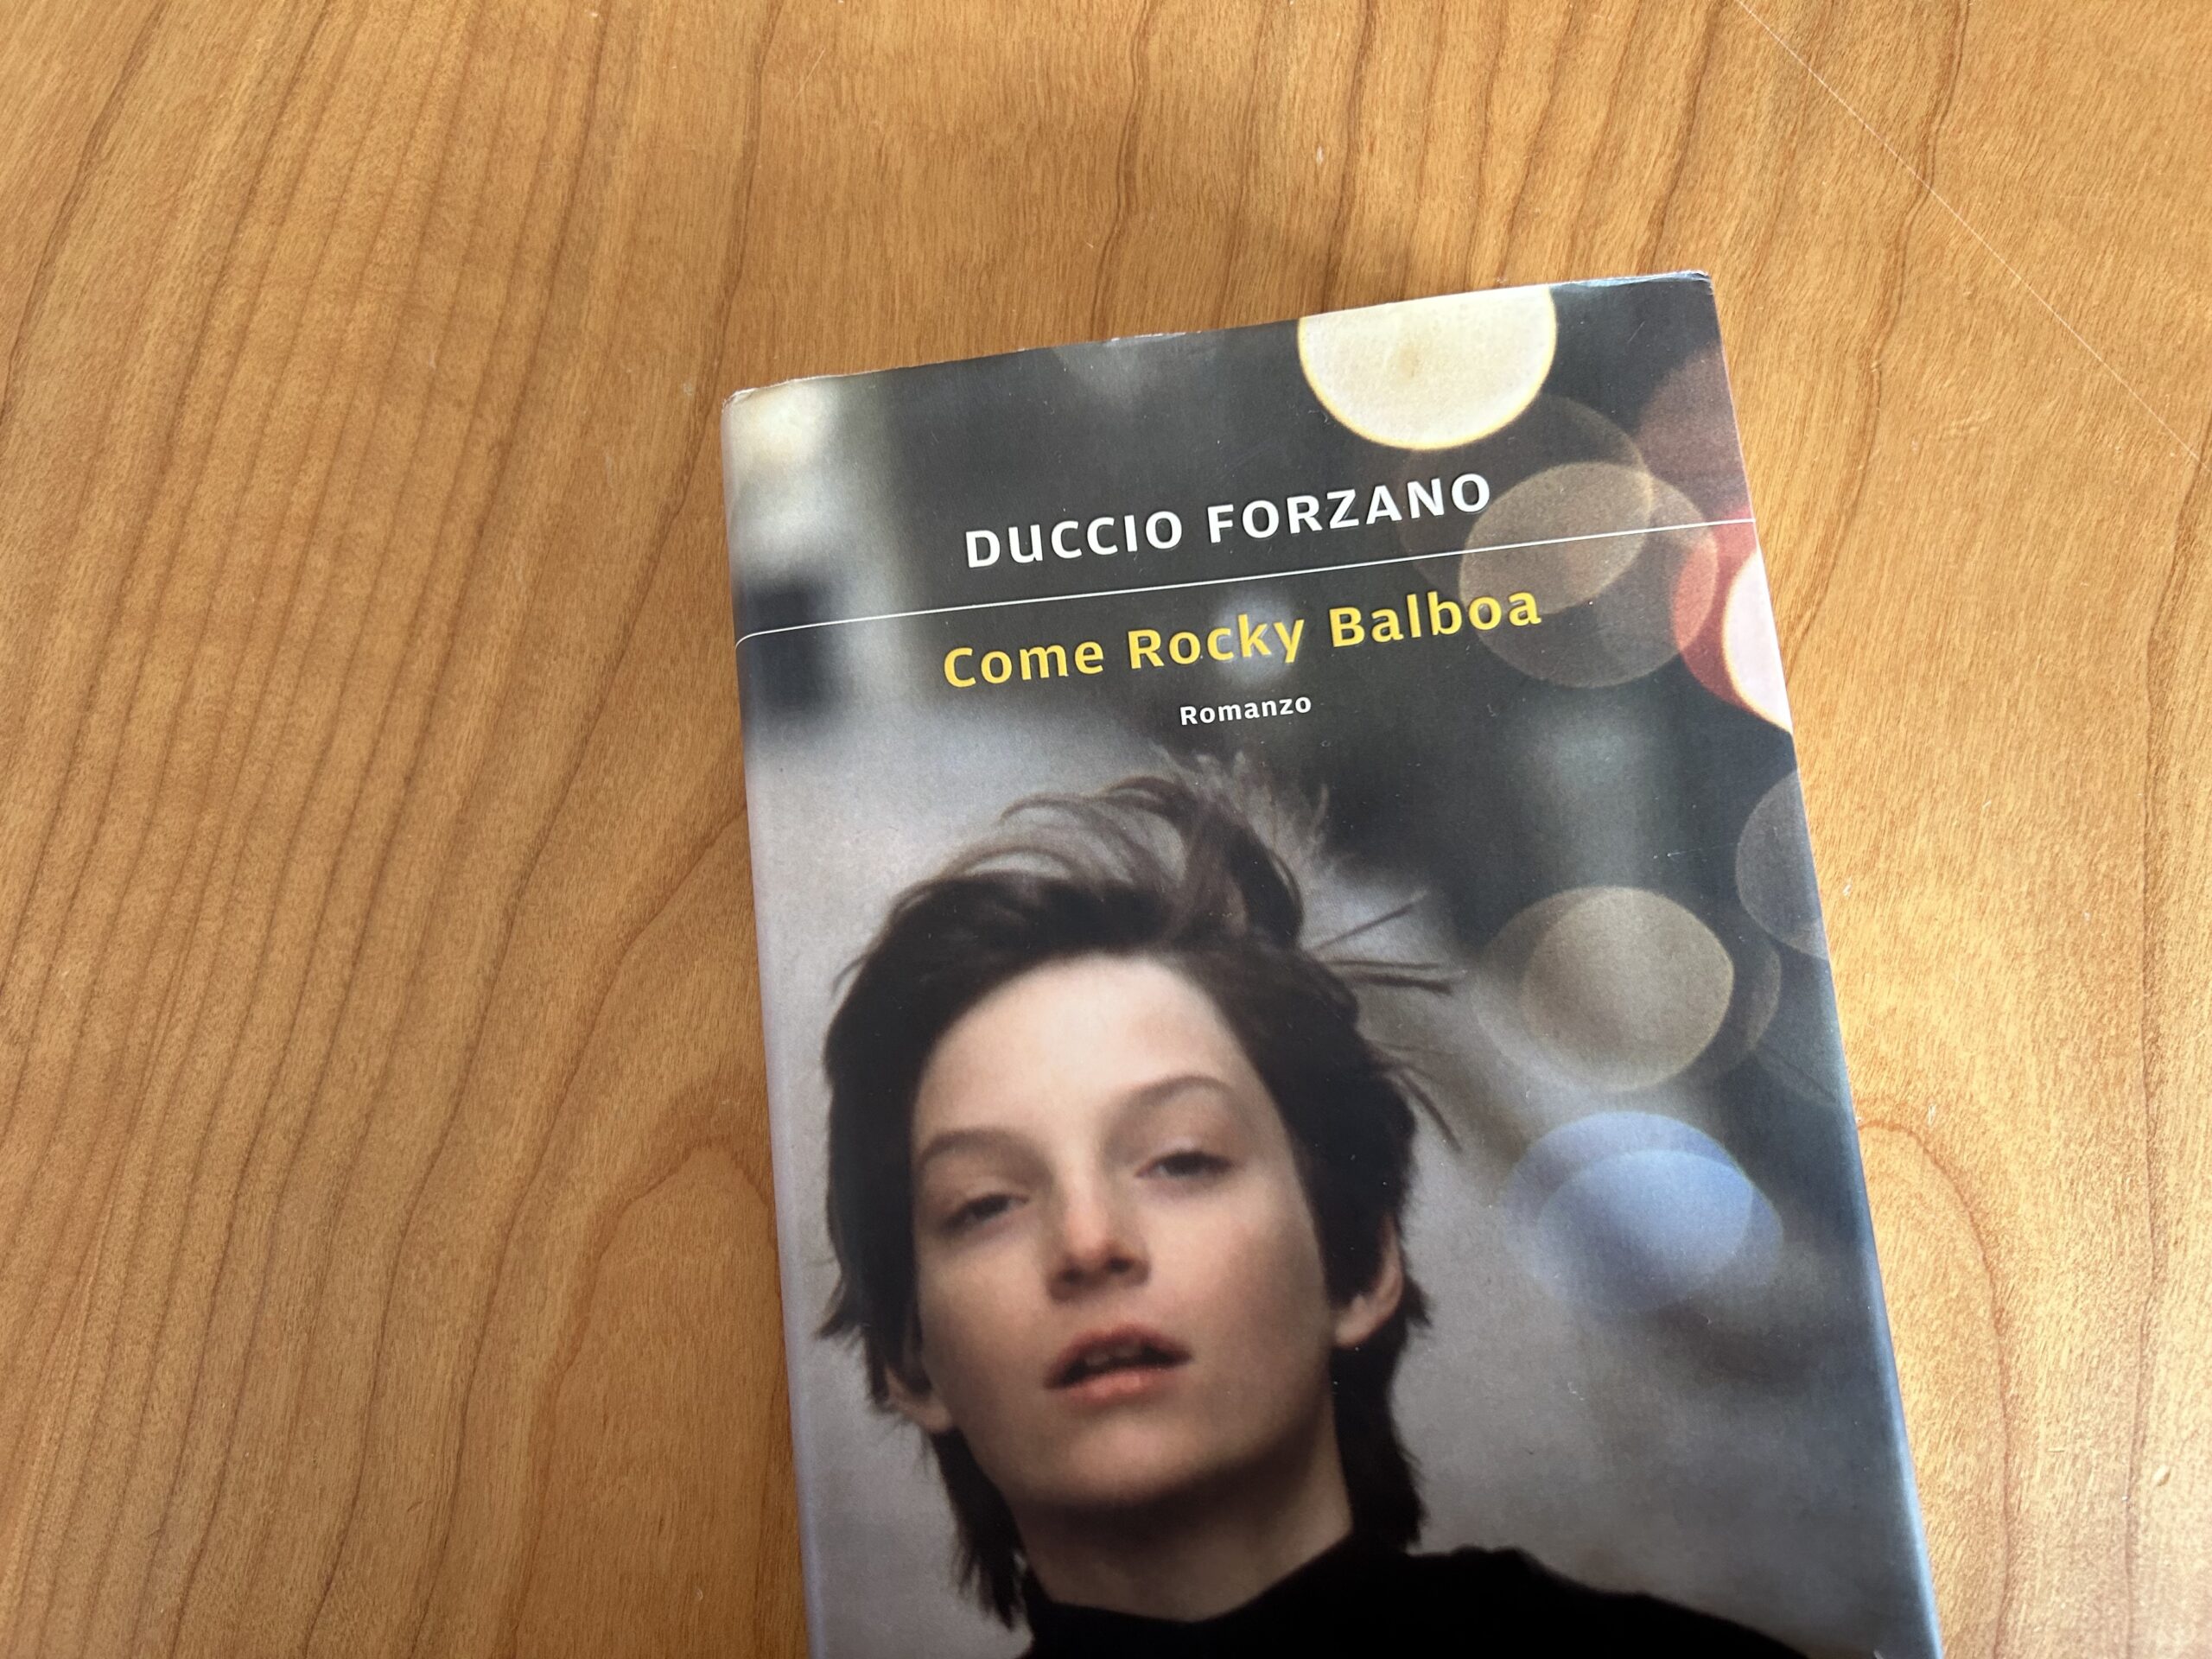 Una truggente biografia: Come rocky balboa di Duccio Forzano